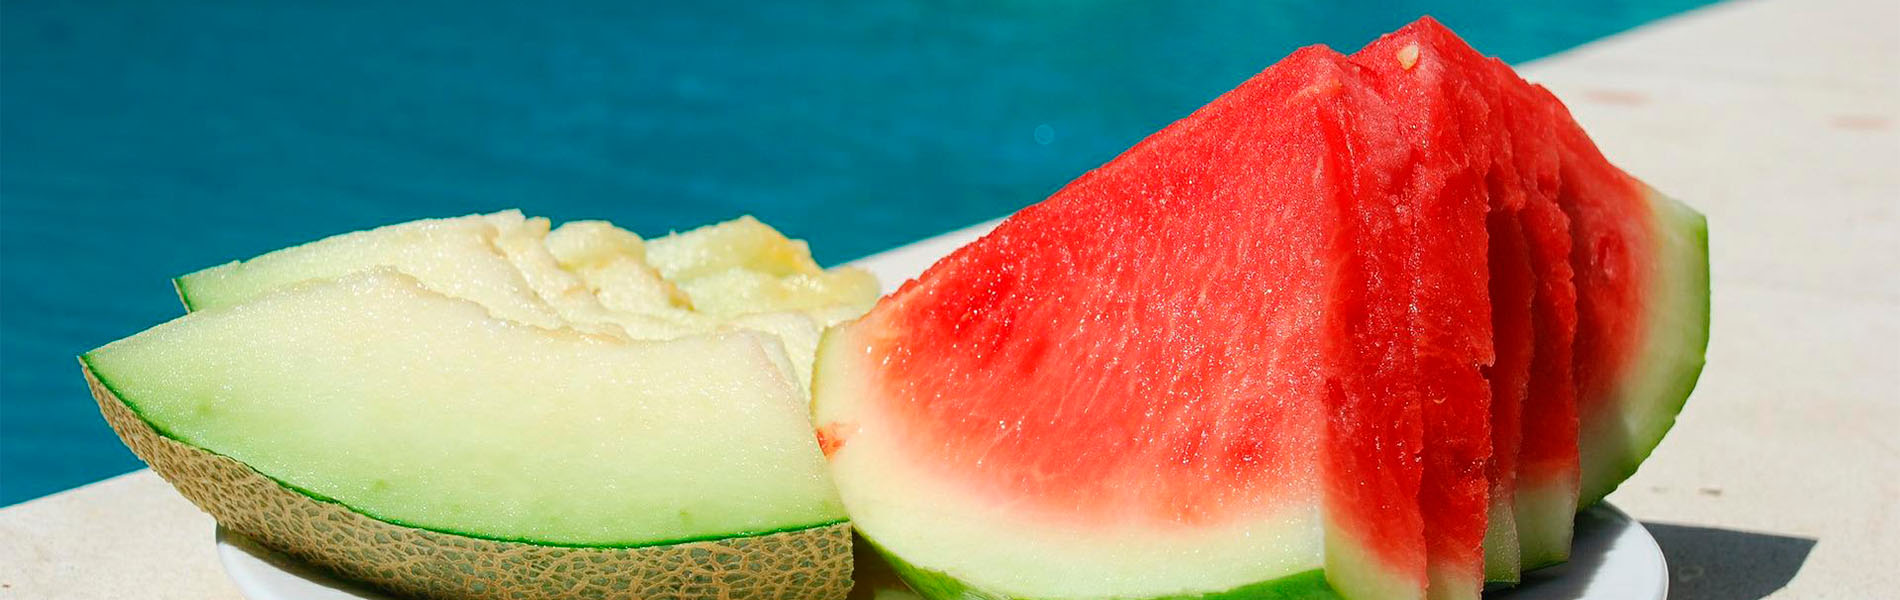 Sanos, sabrosos y refrescantes: 5 alimentos top del verano